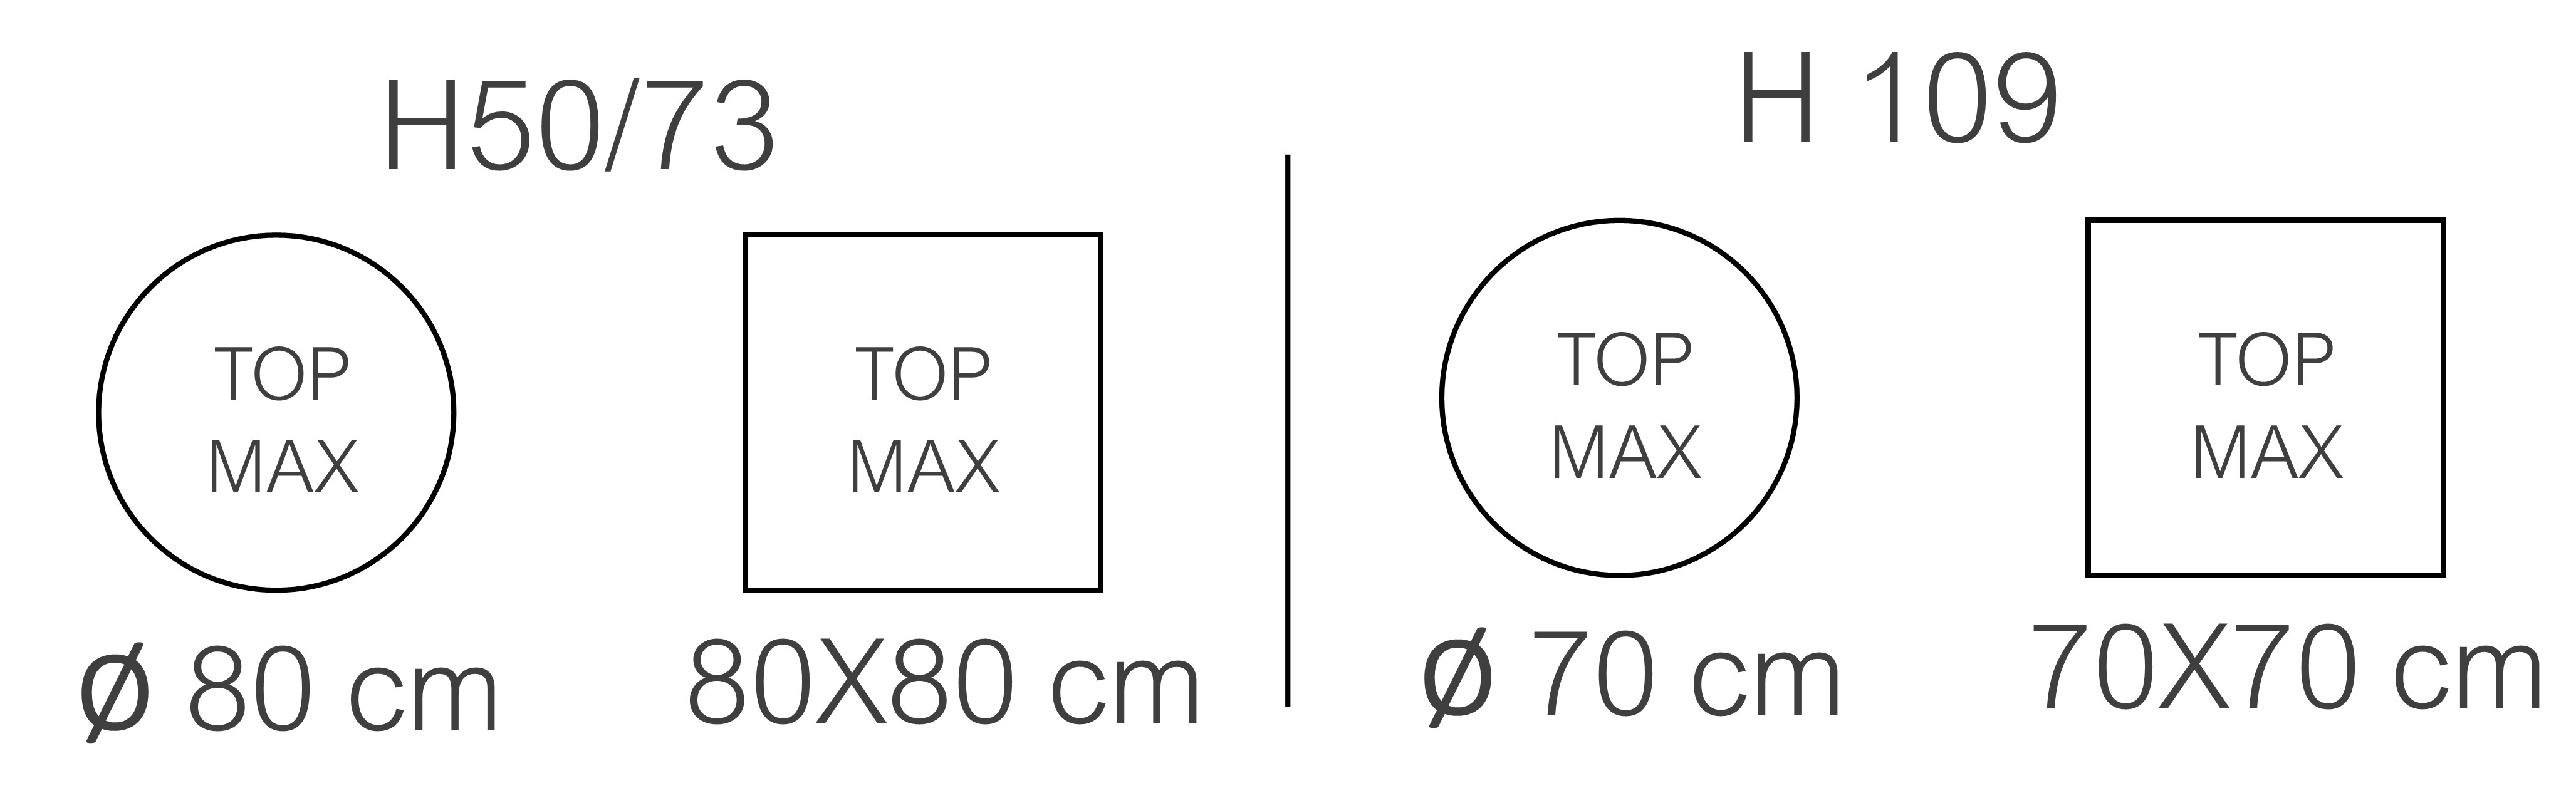 MAX TOP COLONNA 50.jpg